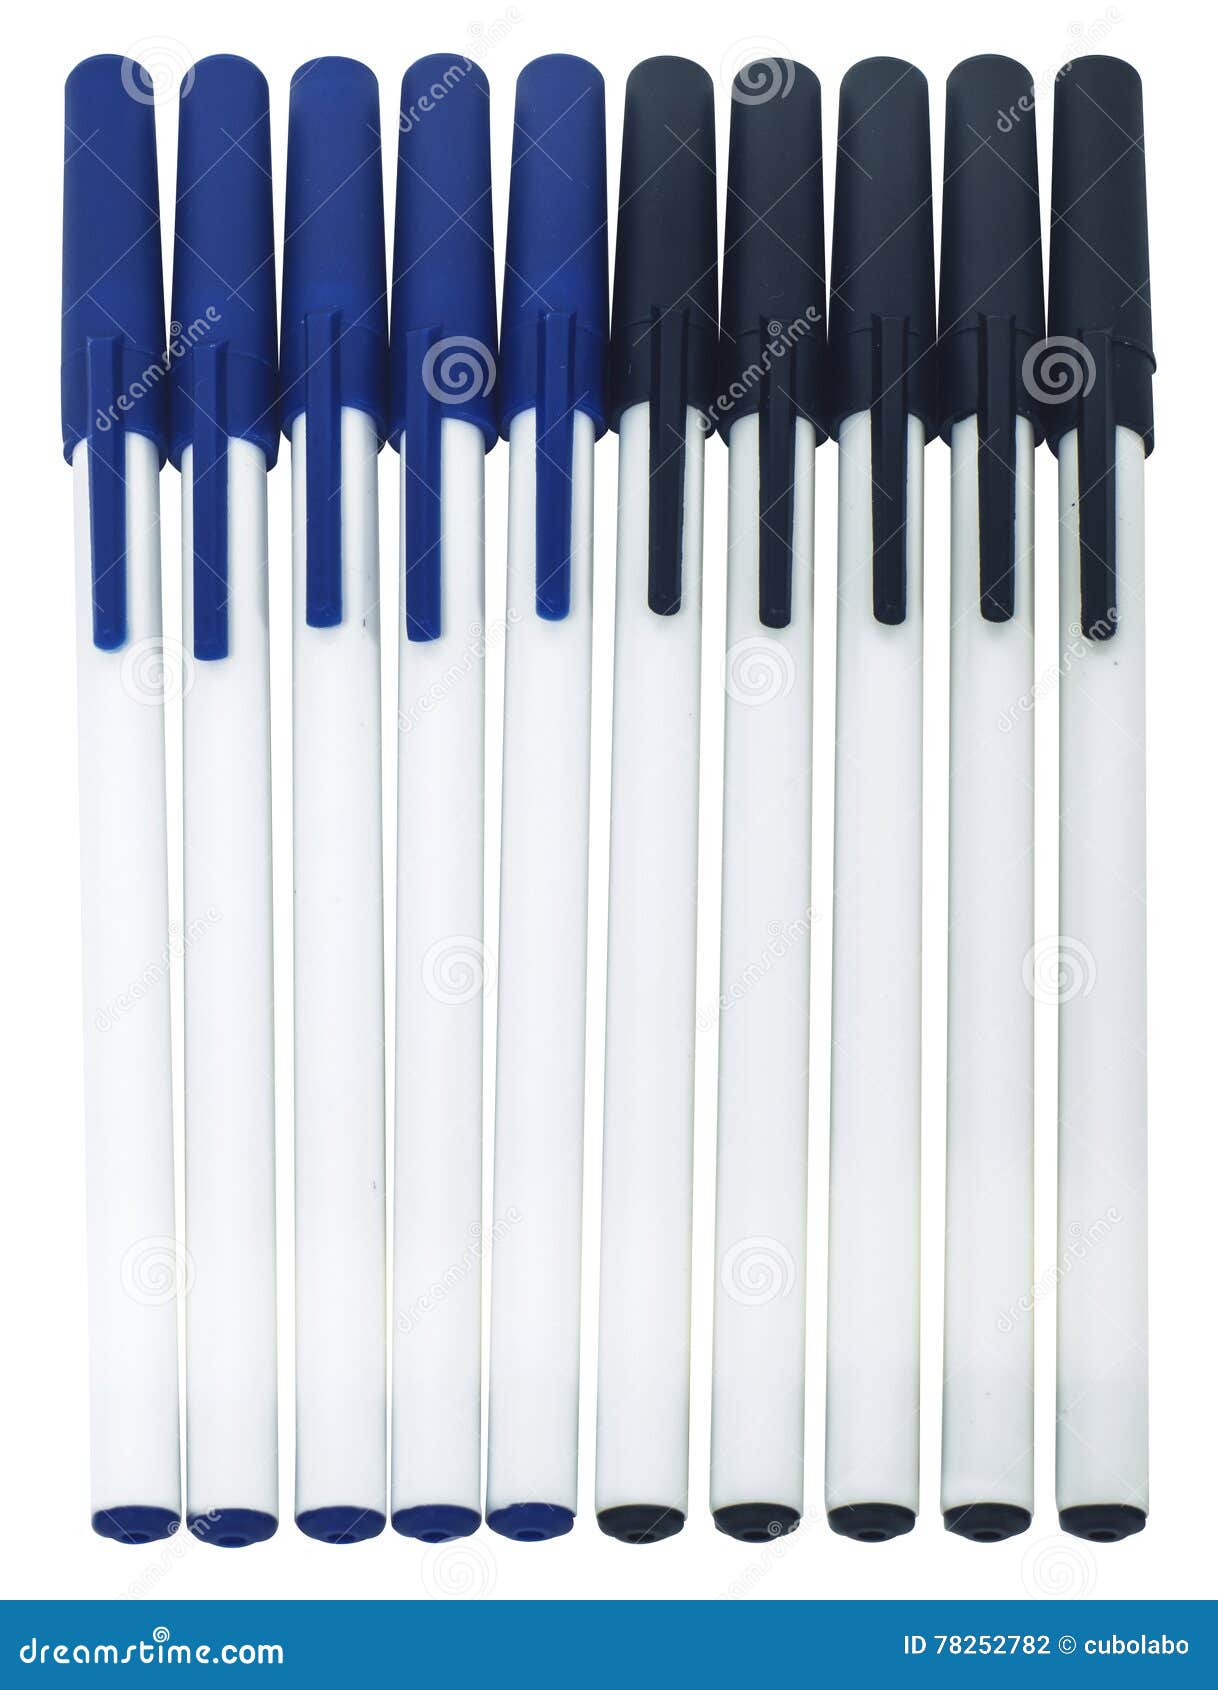 Bolígrafos azules y negros foto de archivo. Imagen de grupo - 78252782